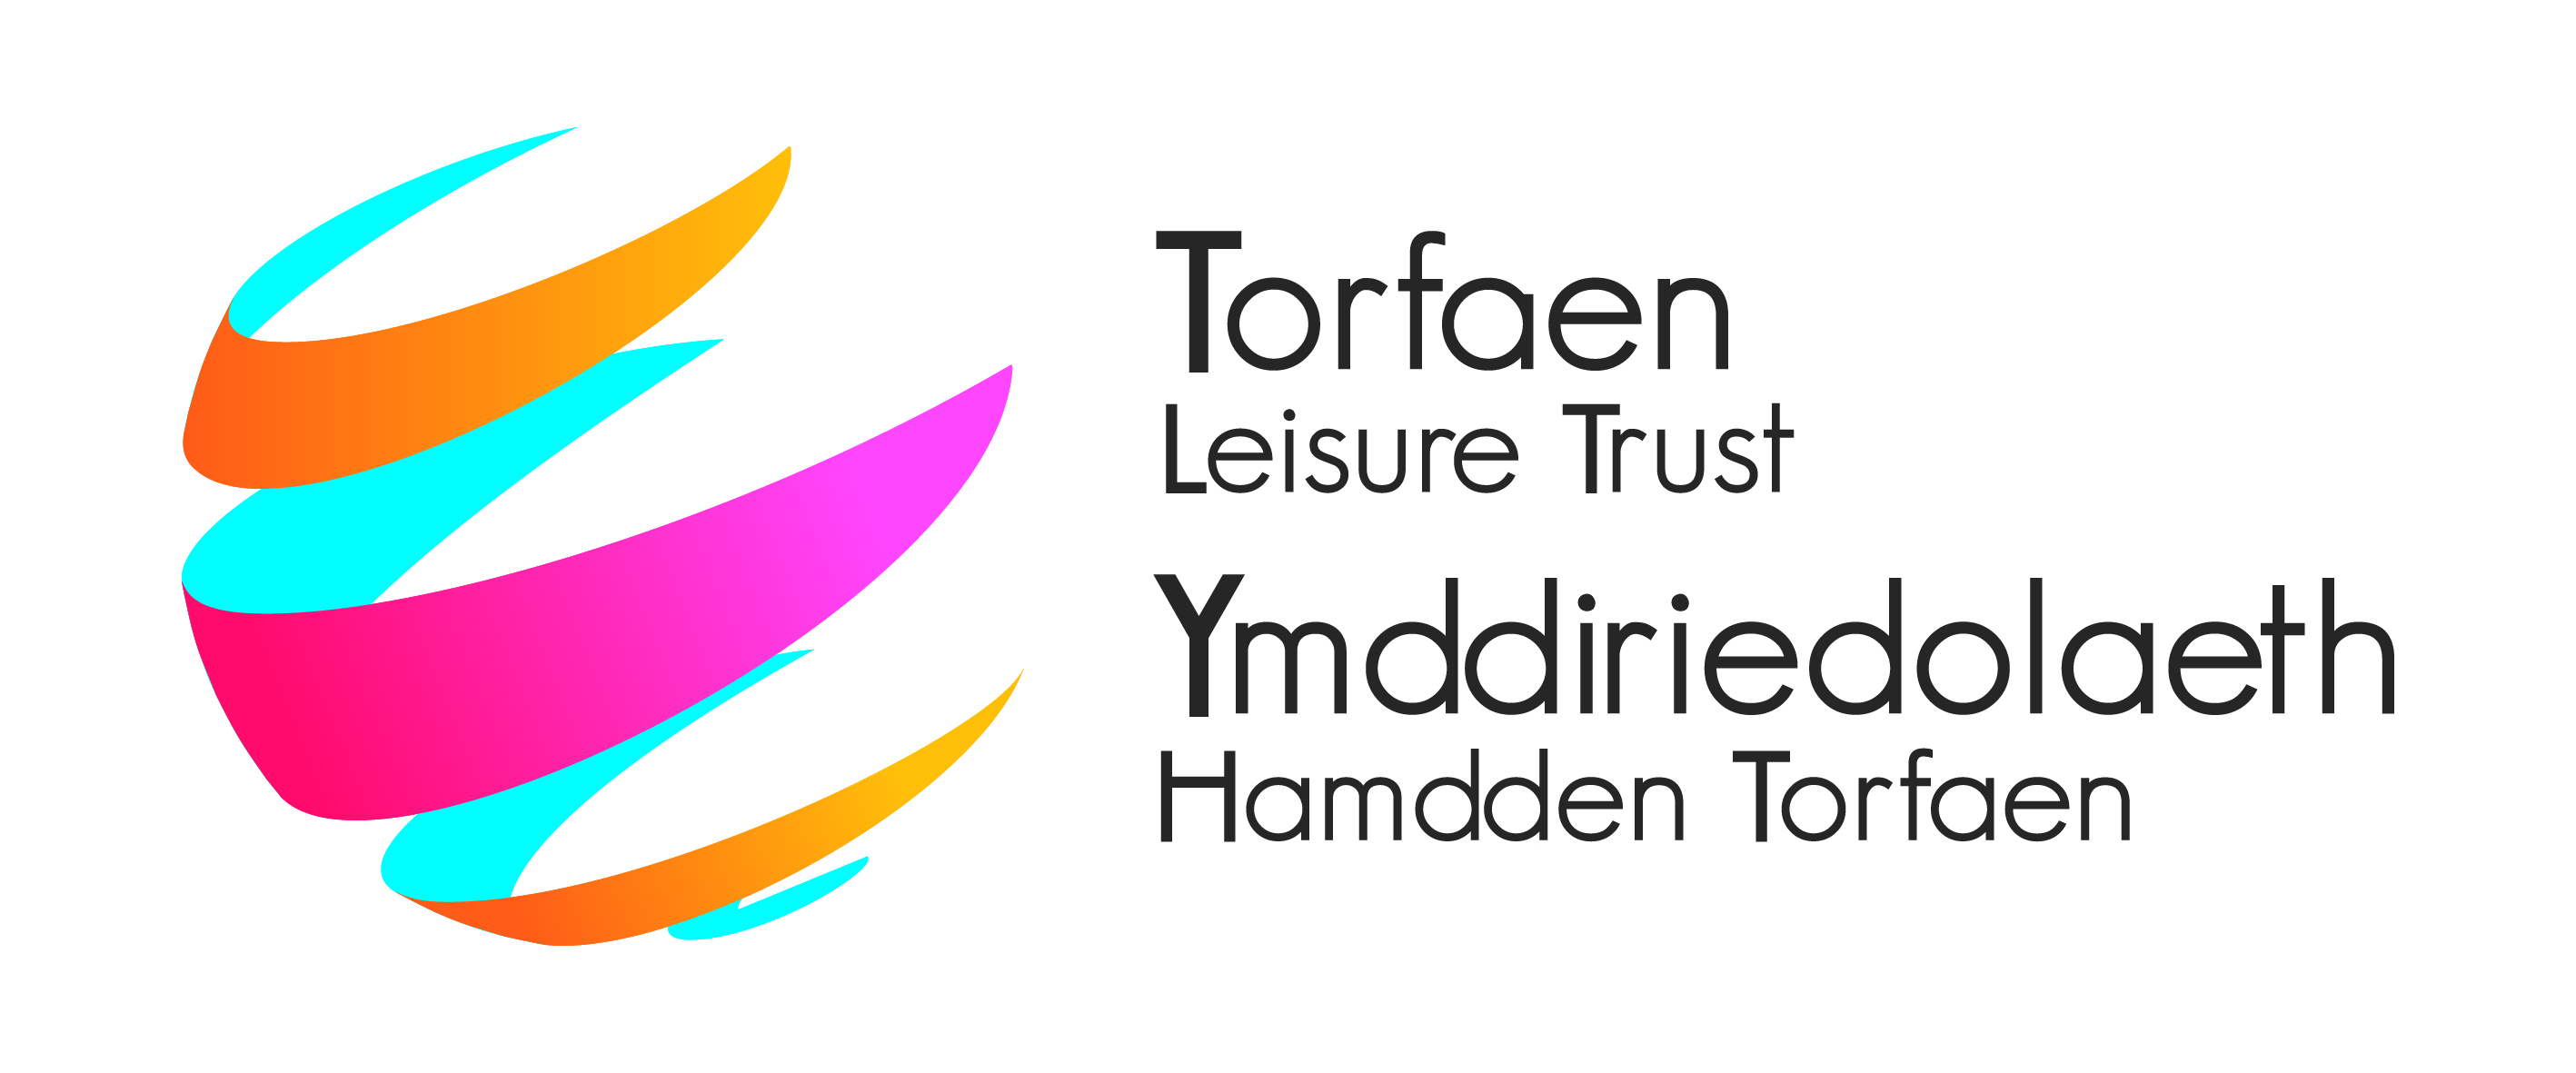 Torfaen Leisure Trust logo